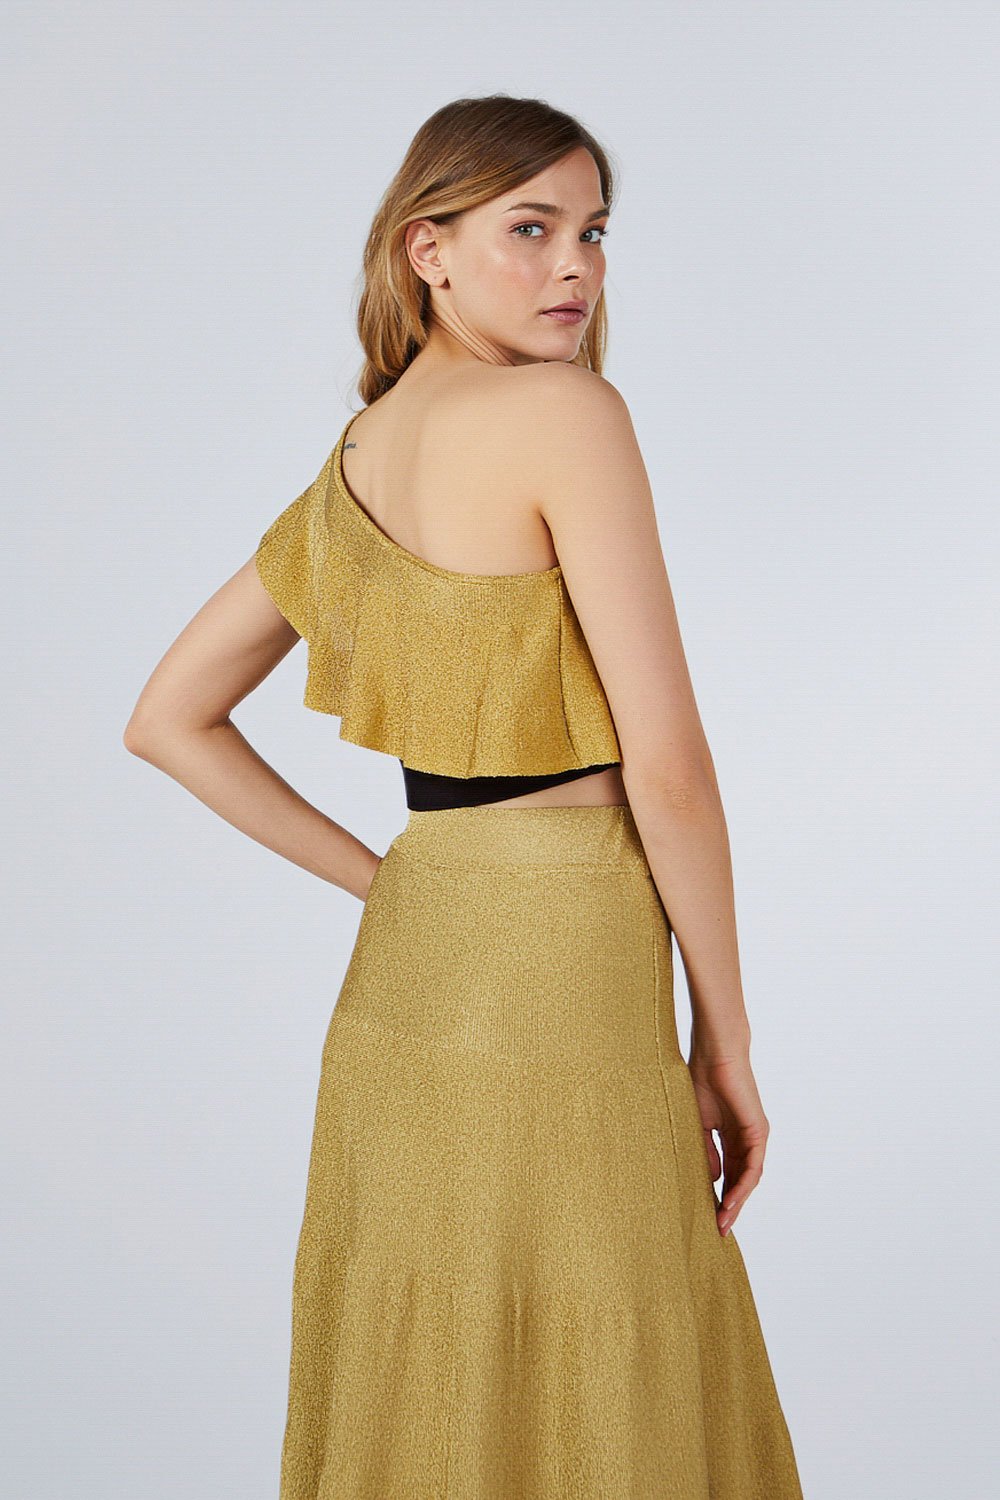 gold skirt one shoulder top